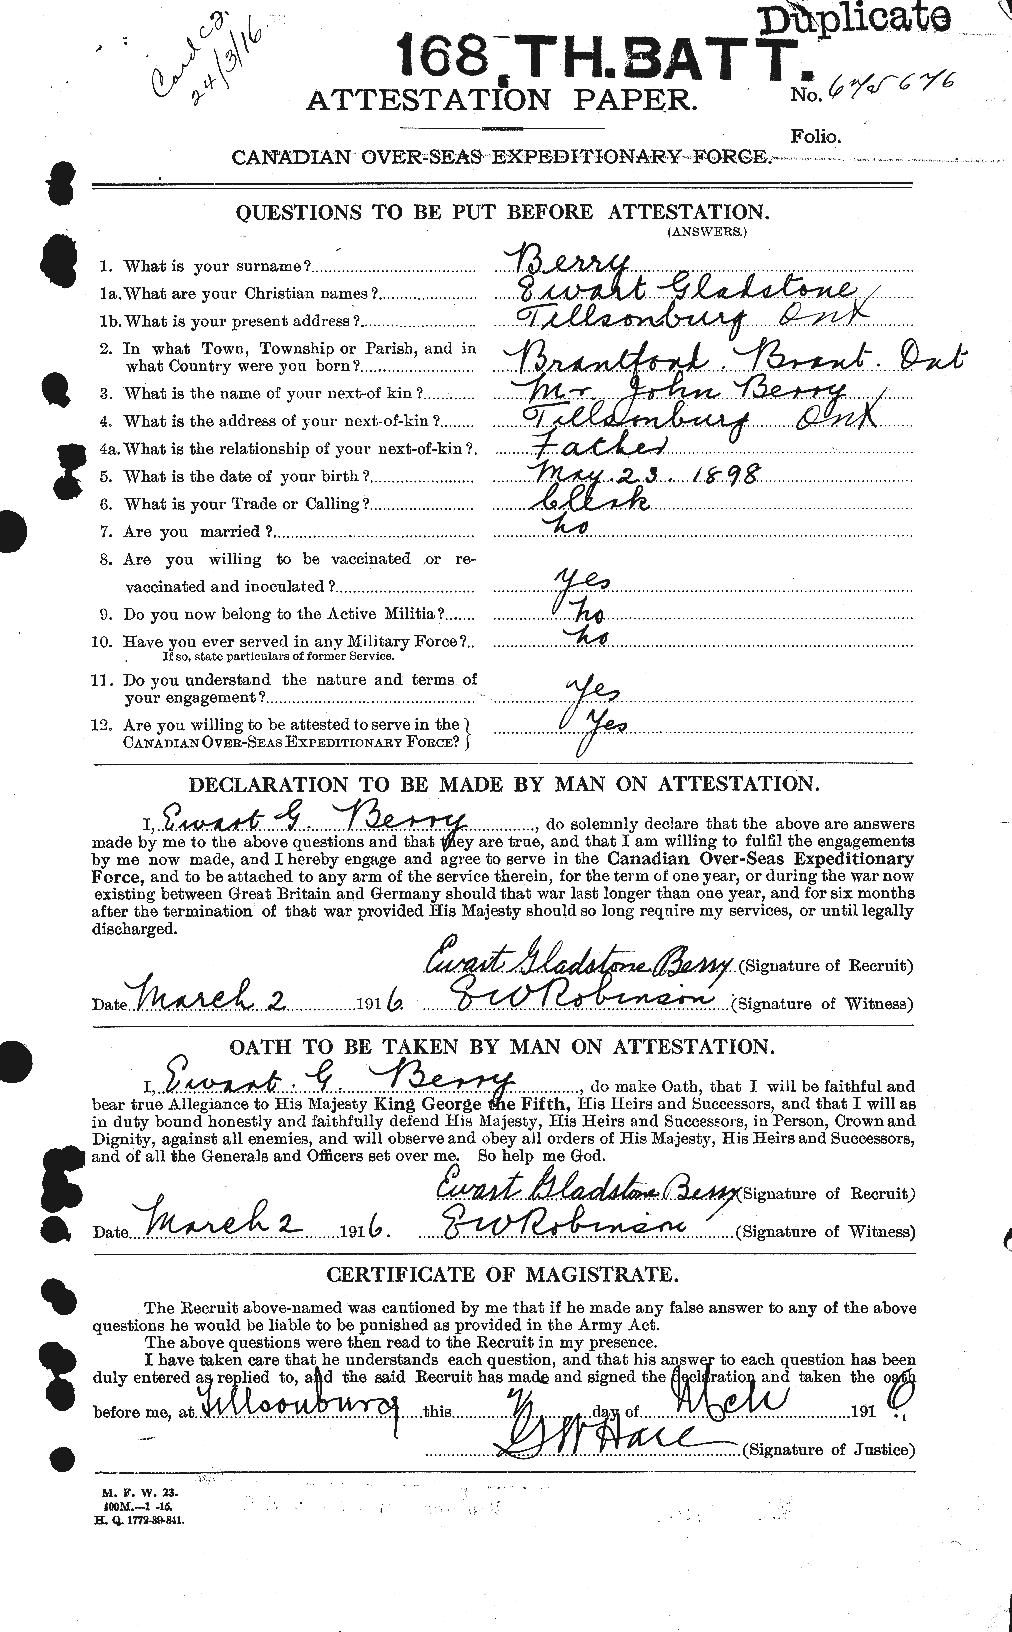 Dossiers du Personnel de la Première Guerre mondiale - CEC 240859a